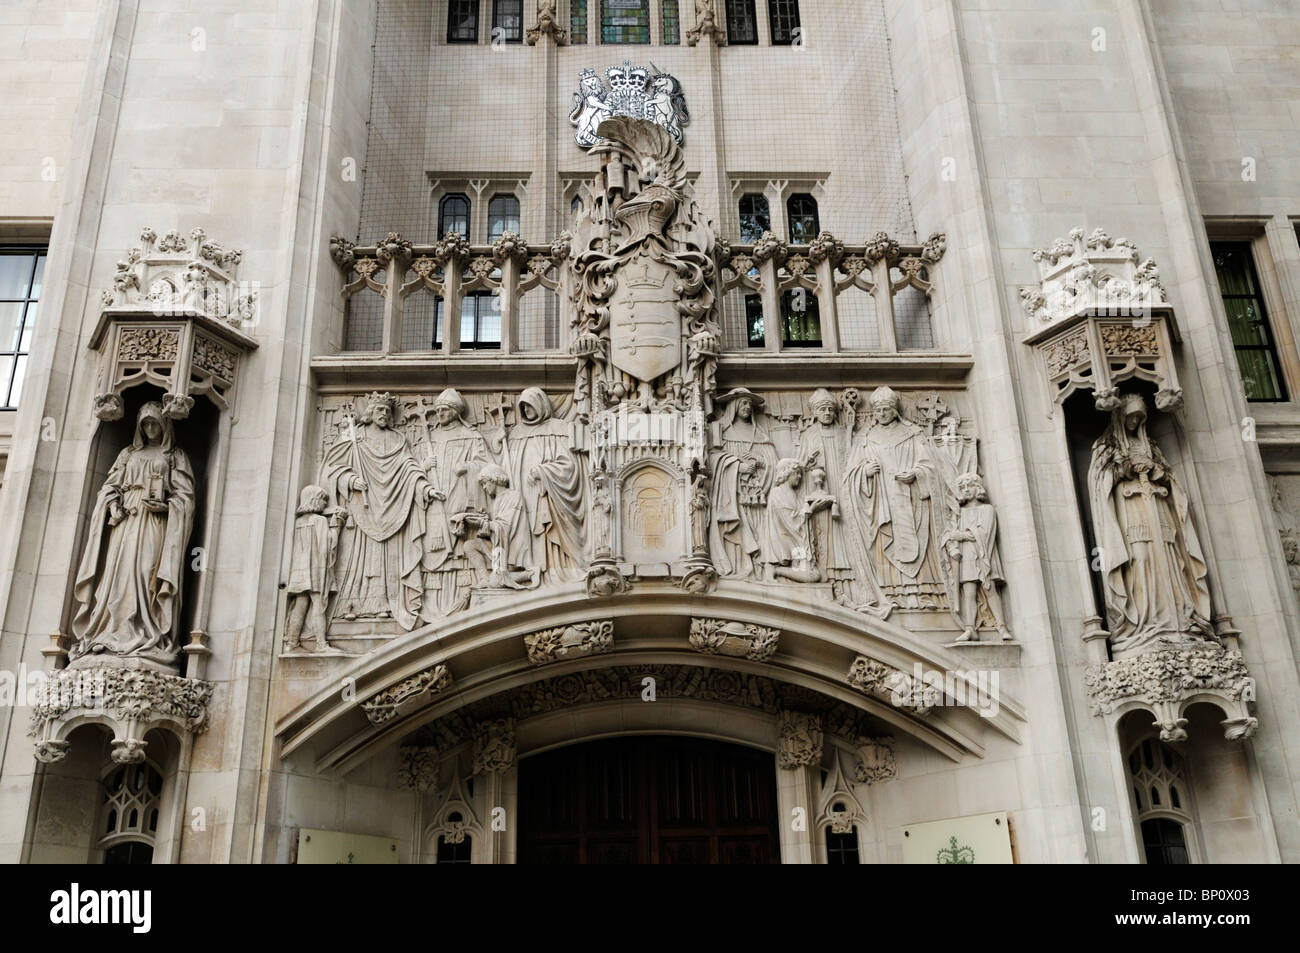 Dettaglio della facciata della Corte suprema, Westminster, London, England, Regno Unito Foto Stock